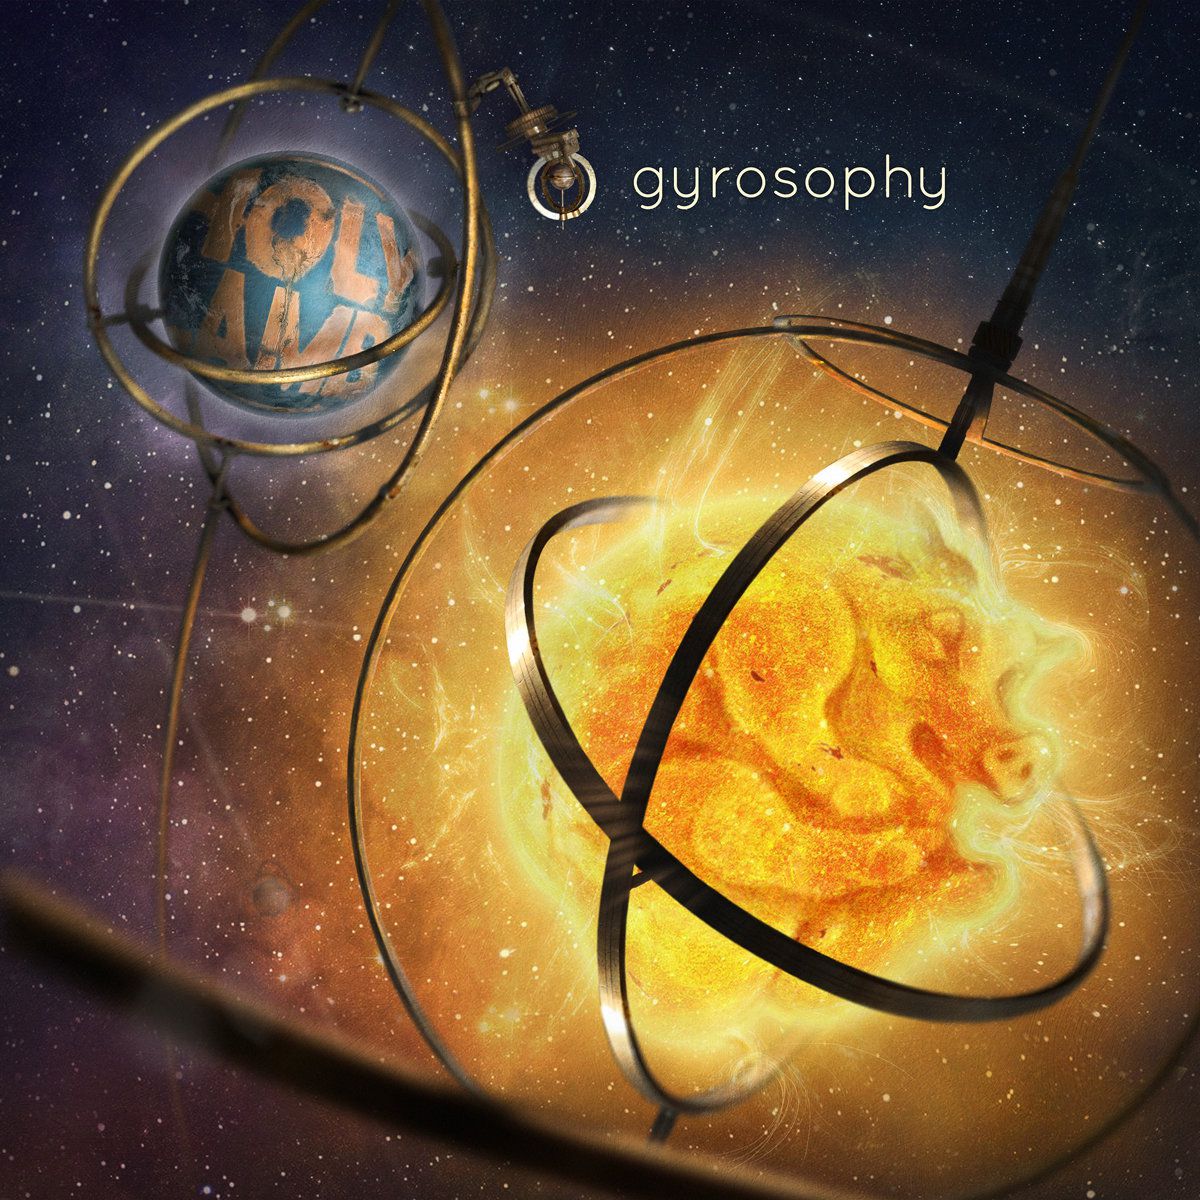 Gyrosophy